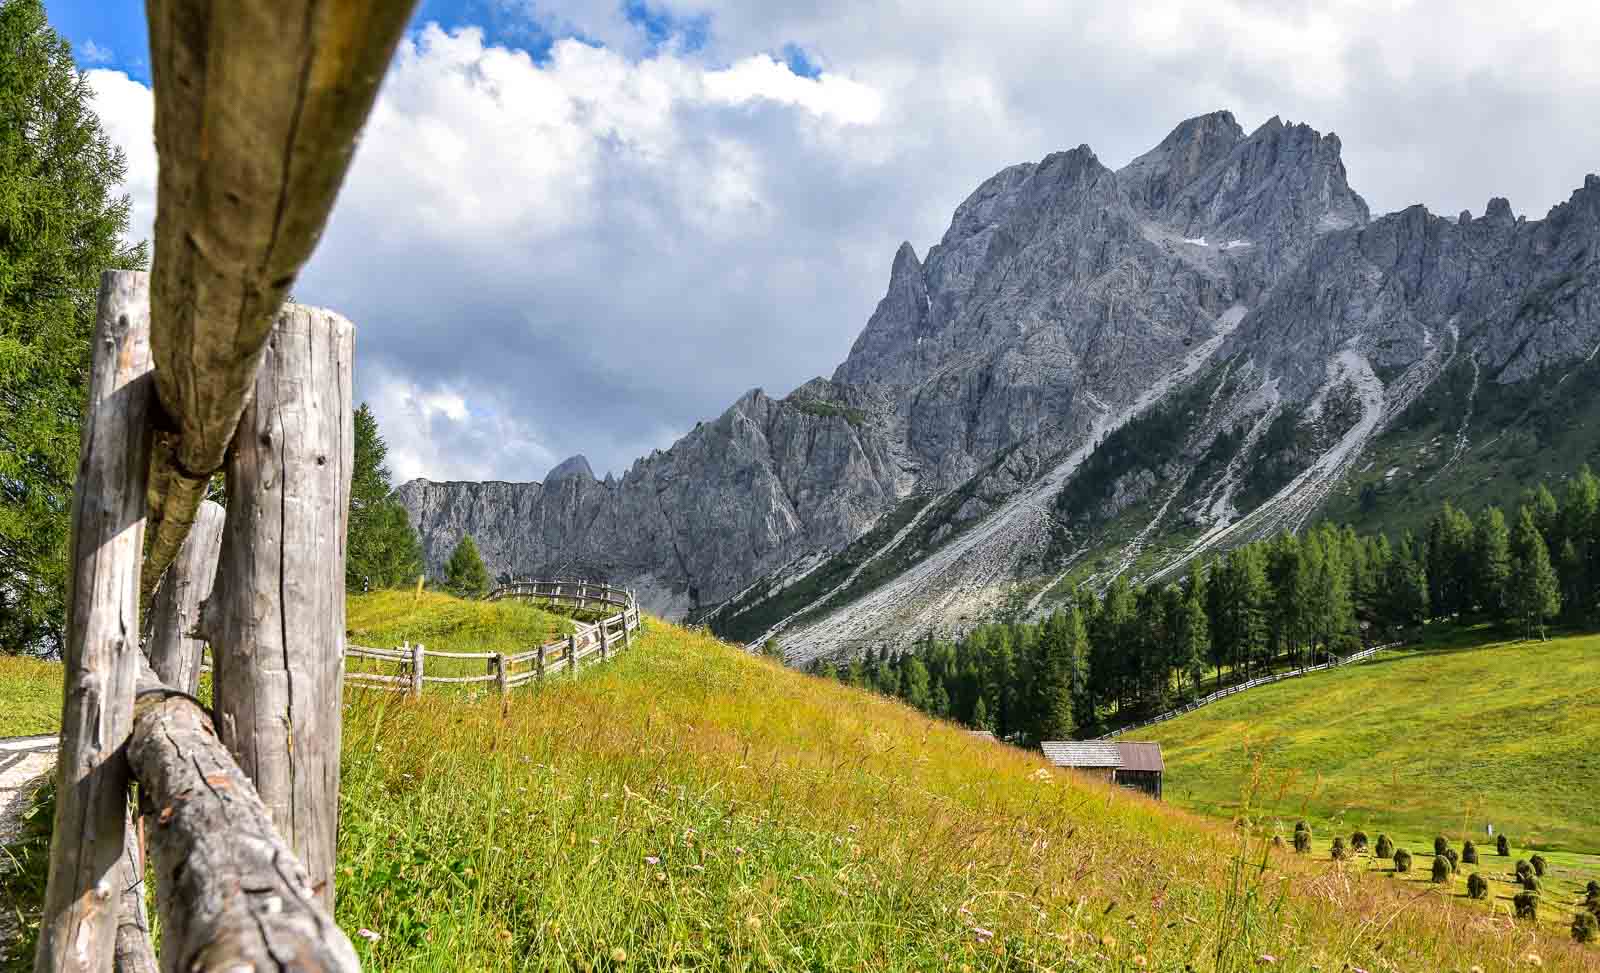 La belle région de montagne des Dolomites, une idée voyage en Italie